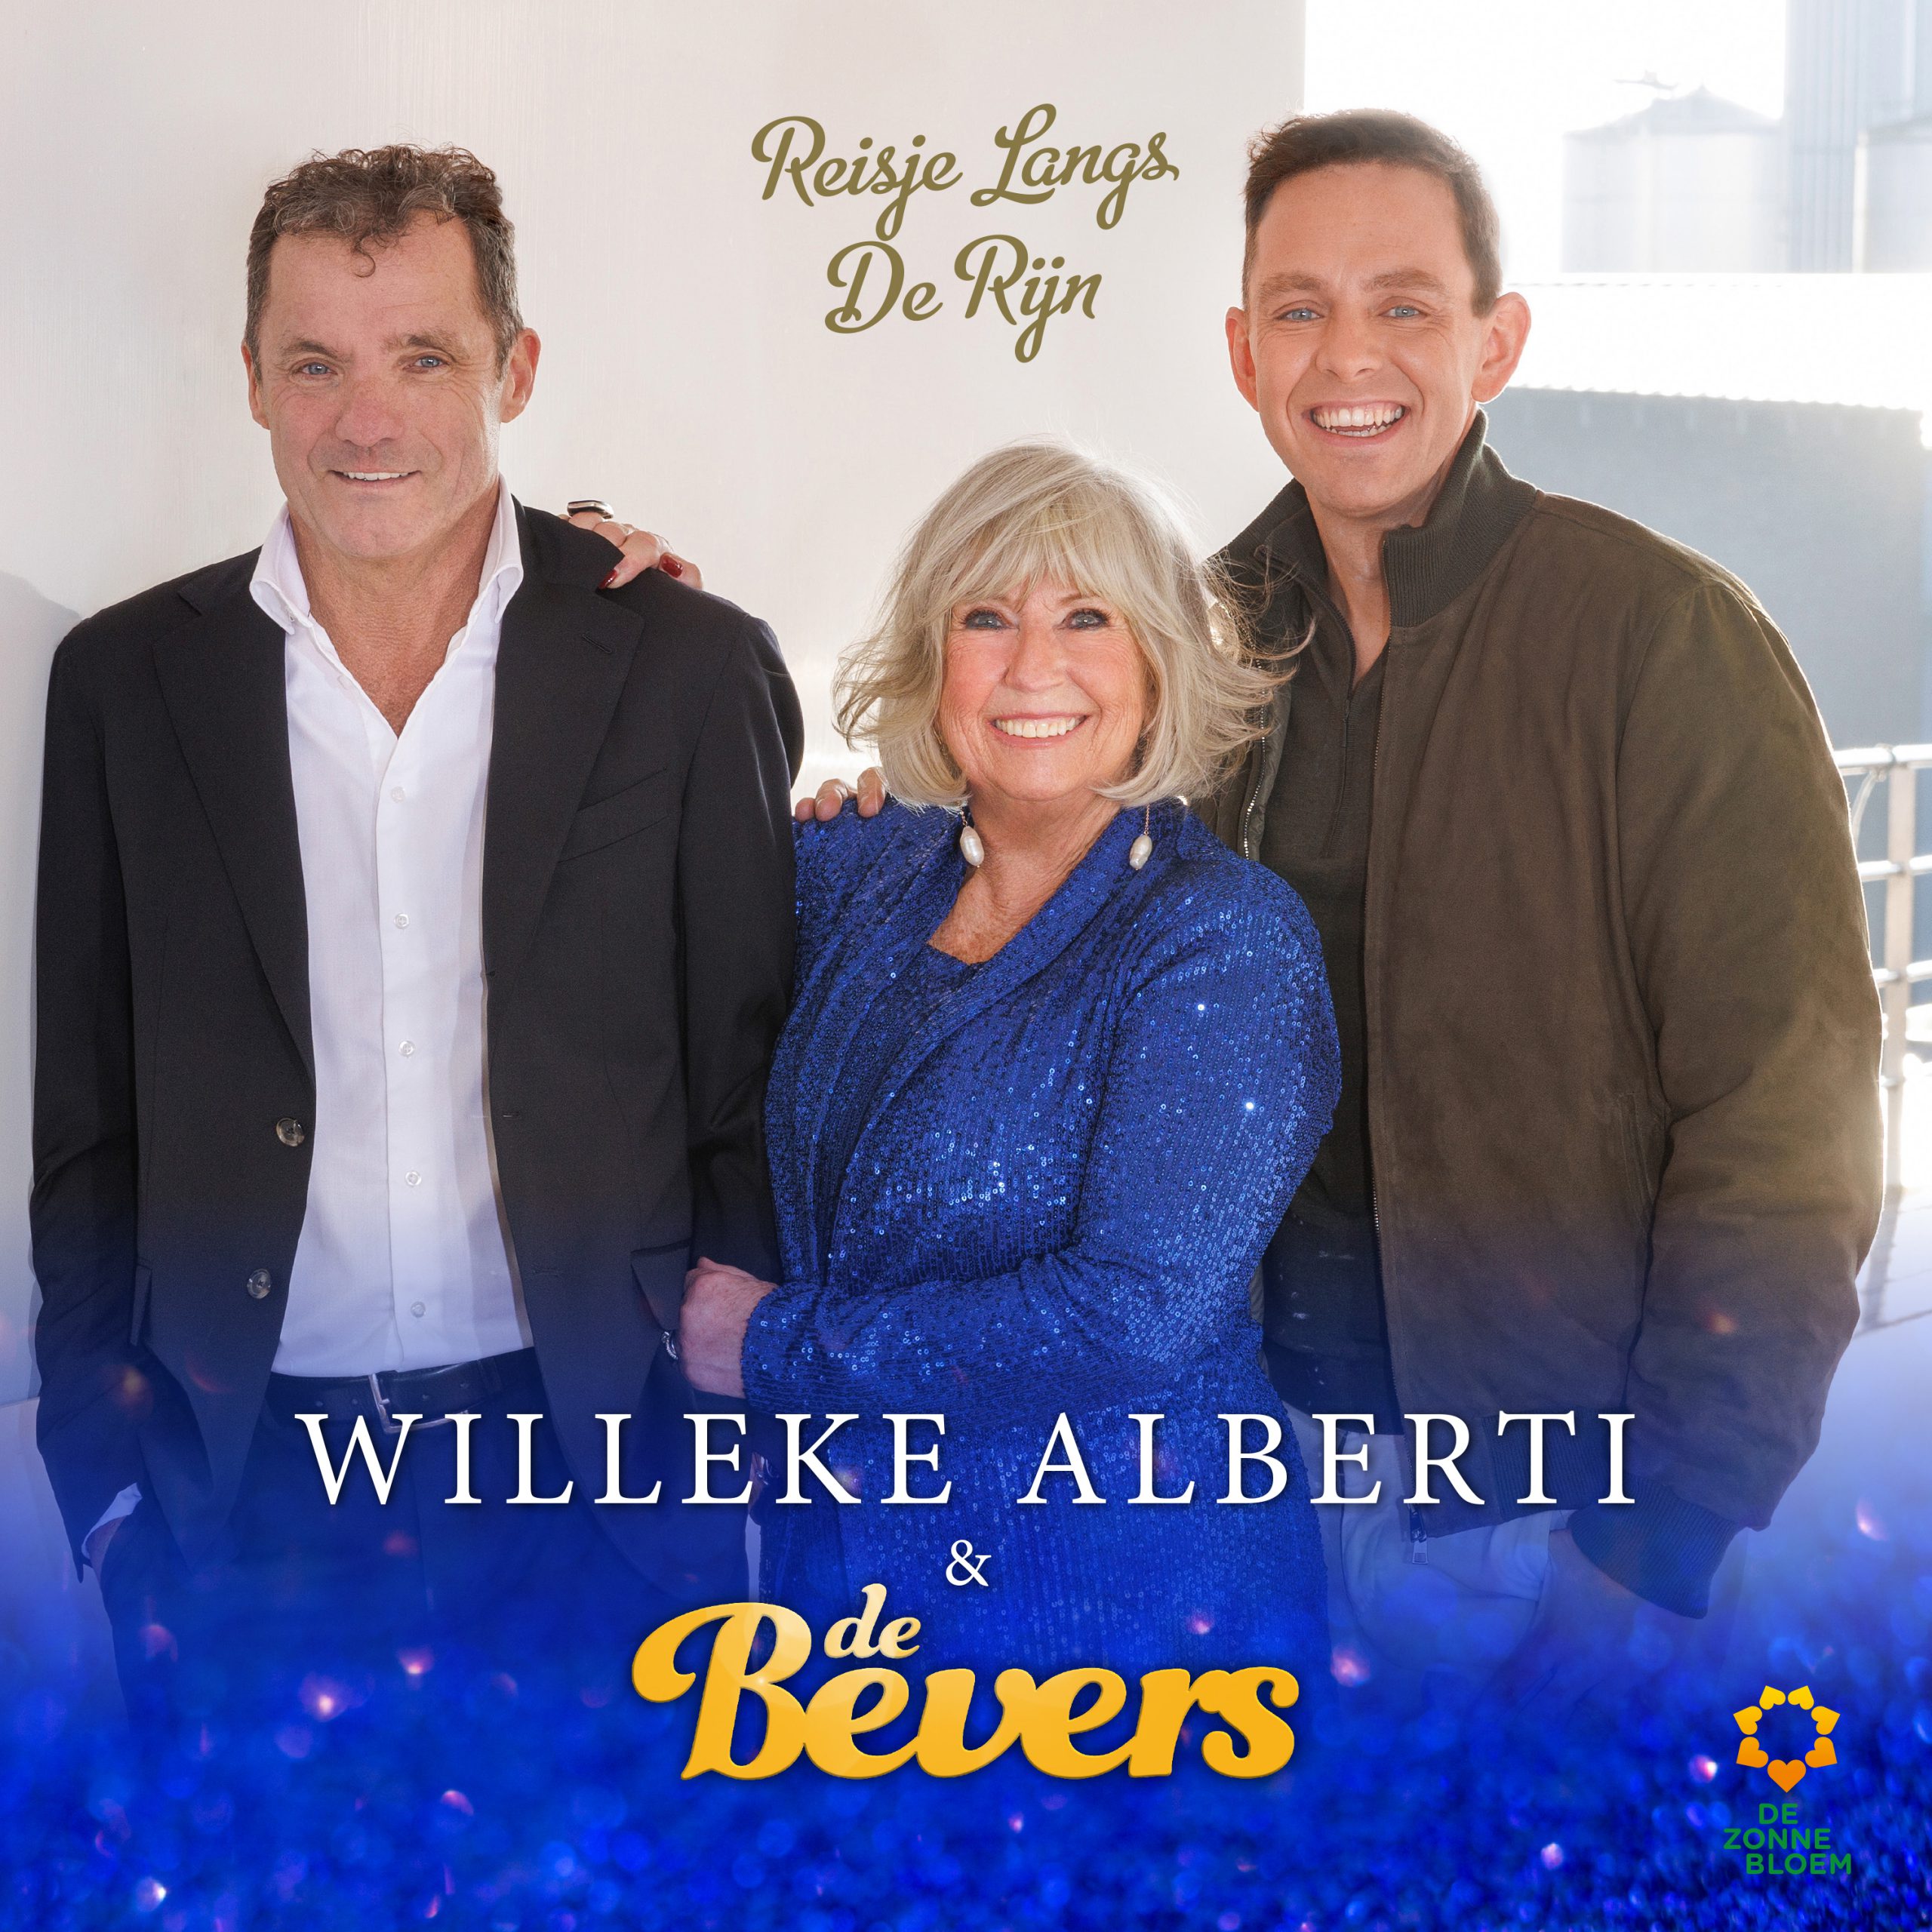 Wake Up Call: Kees (De Bevers) over de nieuwe single met Willeke Alberti